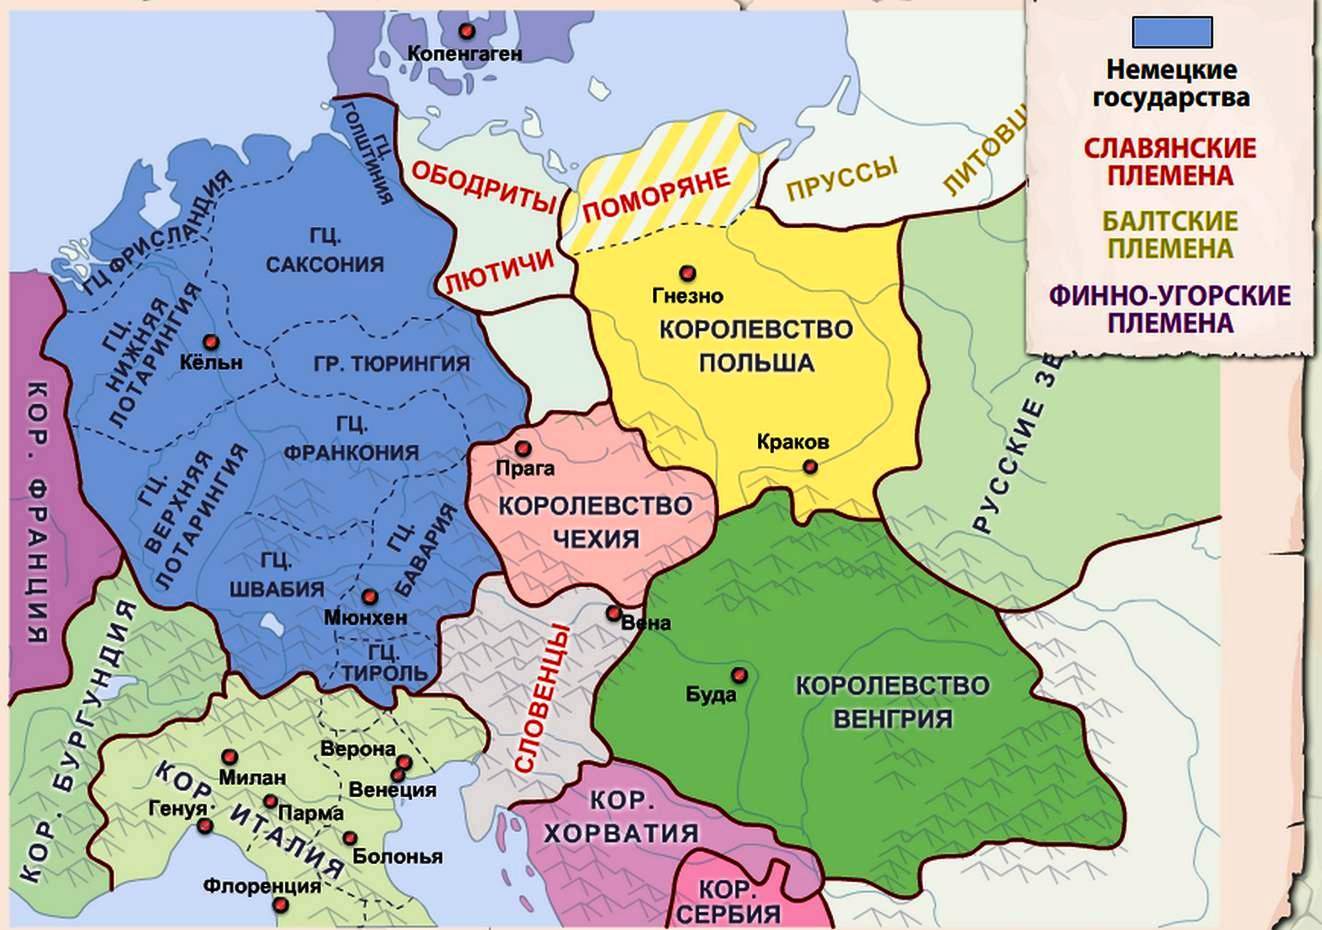 Какие народы жили в прибалтийских землях. Территория полишм в 11 веке. Территория Германии в 11-13 веках. Славянские земли в Германии. Германское королевство средние века.